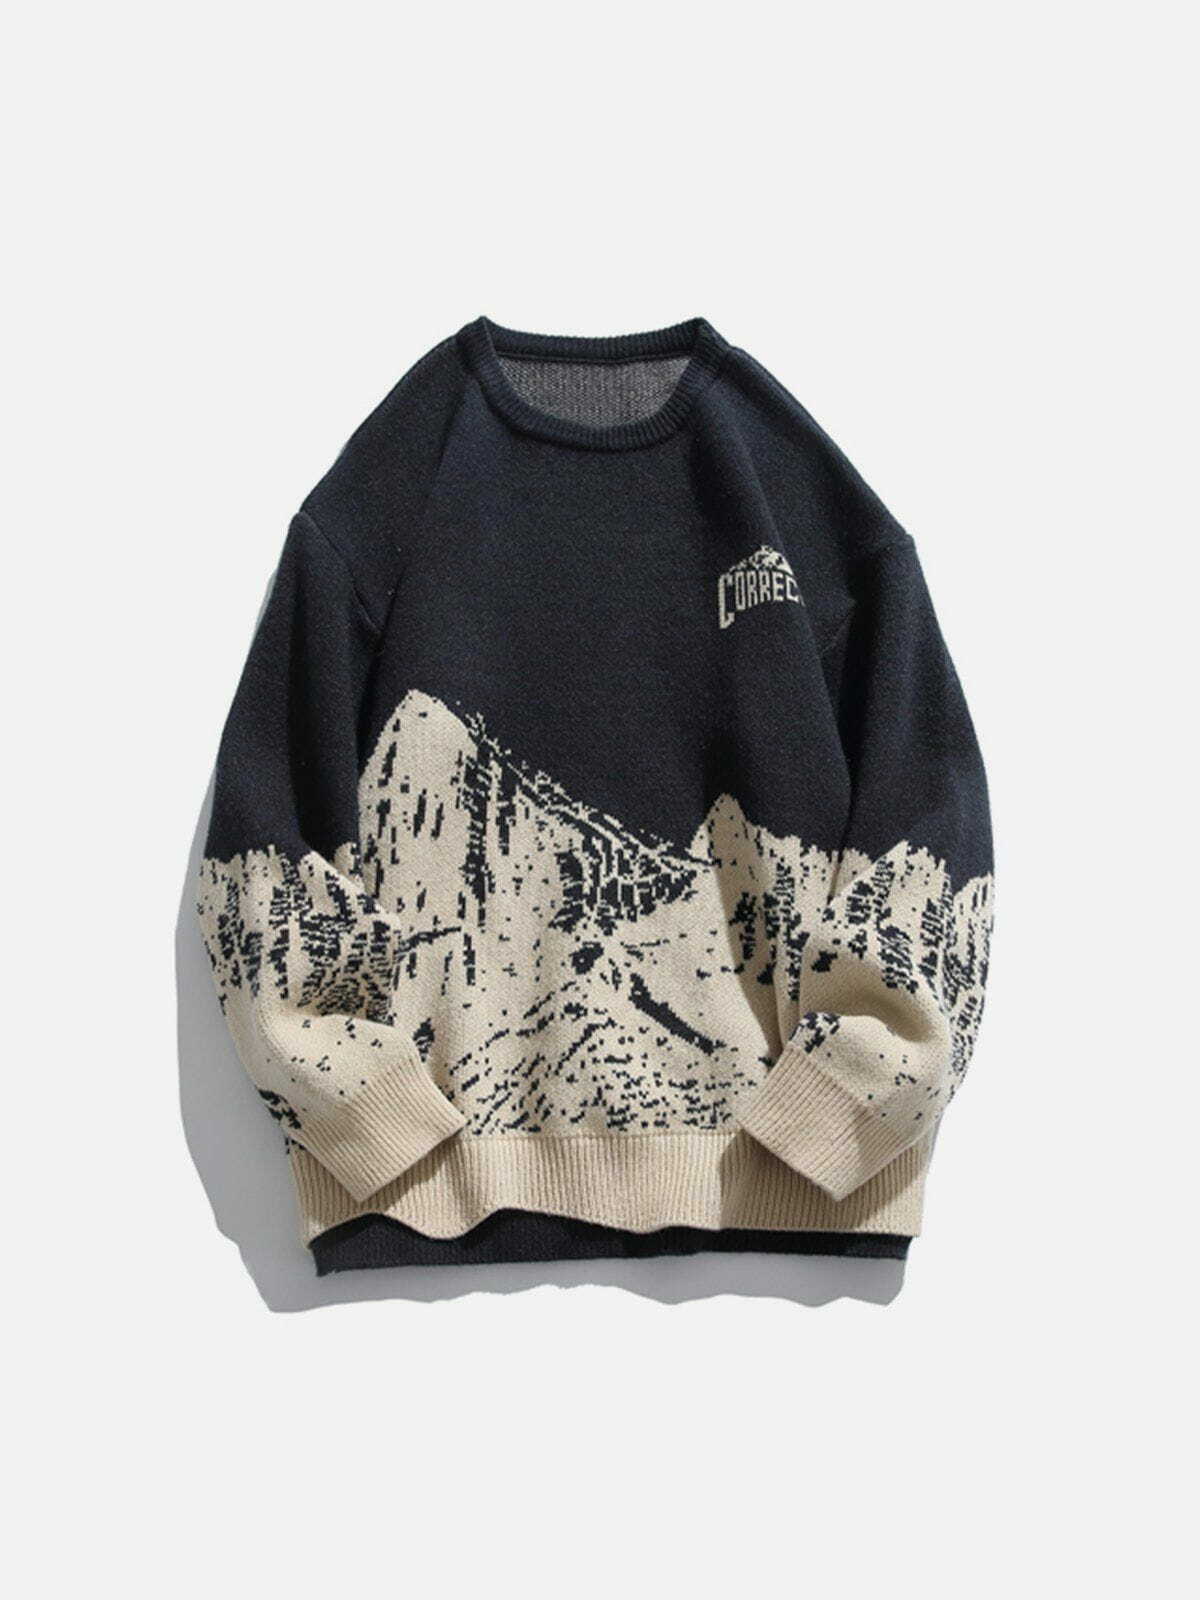 mountain peak knit sweater edgy y2k streetwear 5174